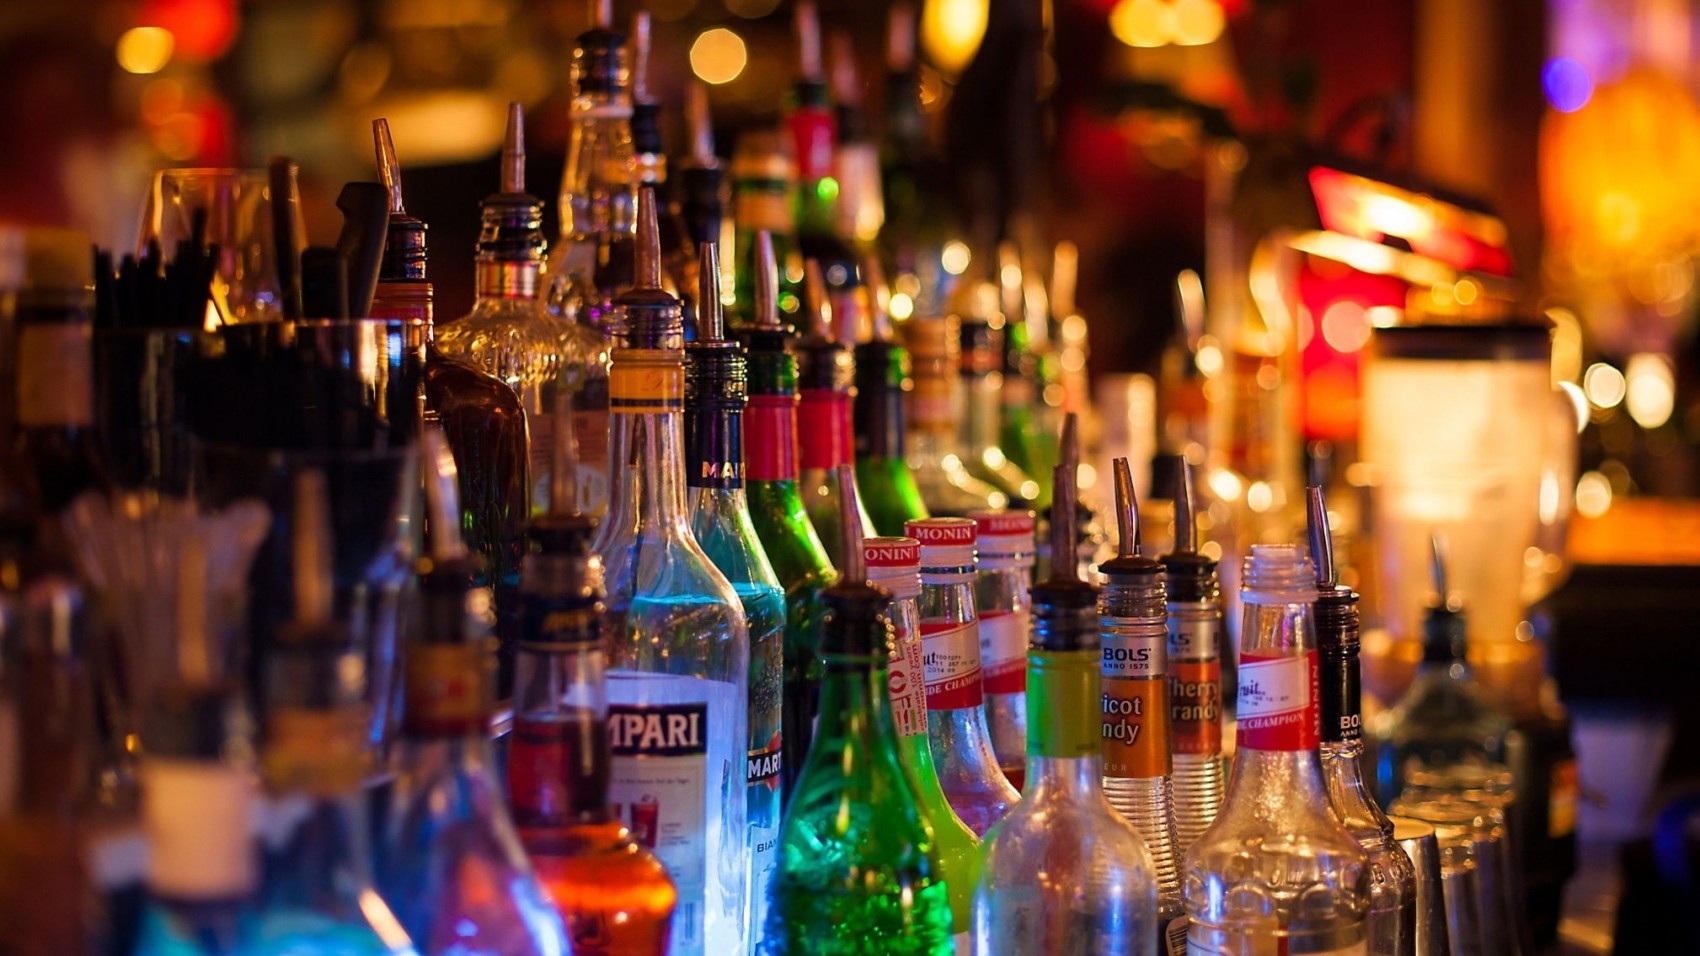 TIC sur les boissons alcoolisées : Le gouvernement récidive